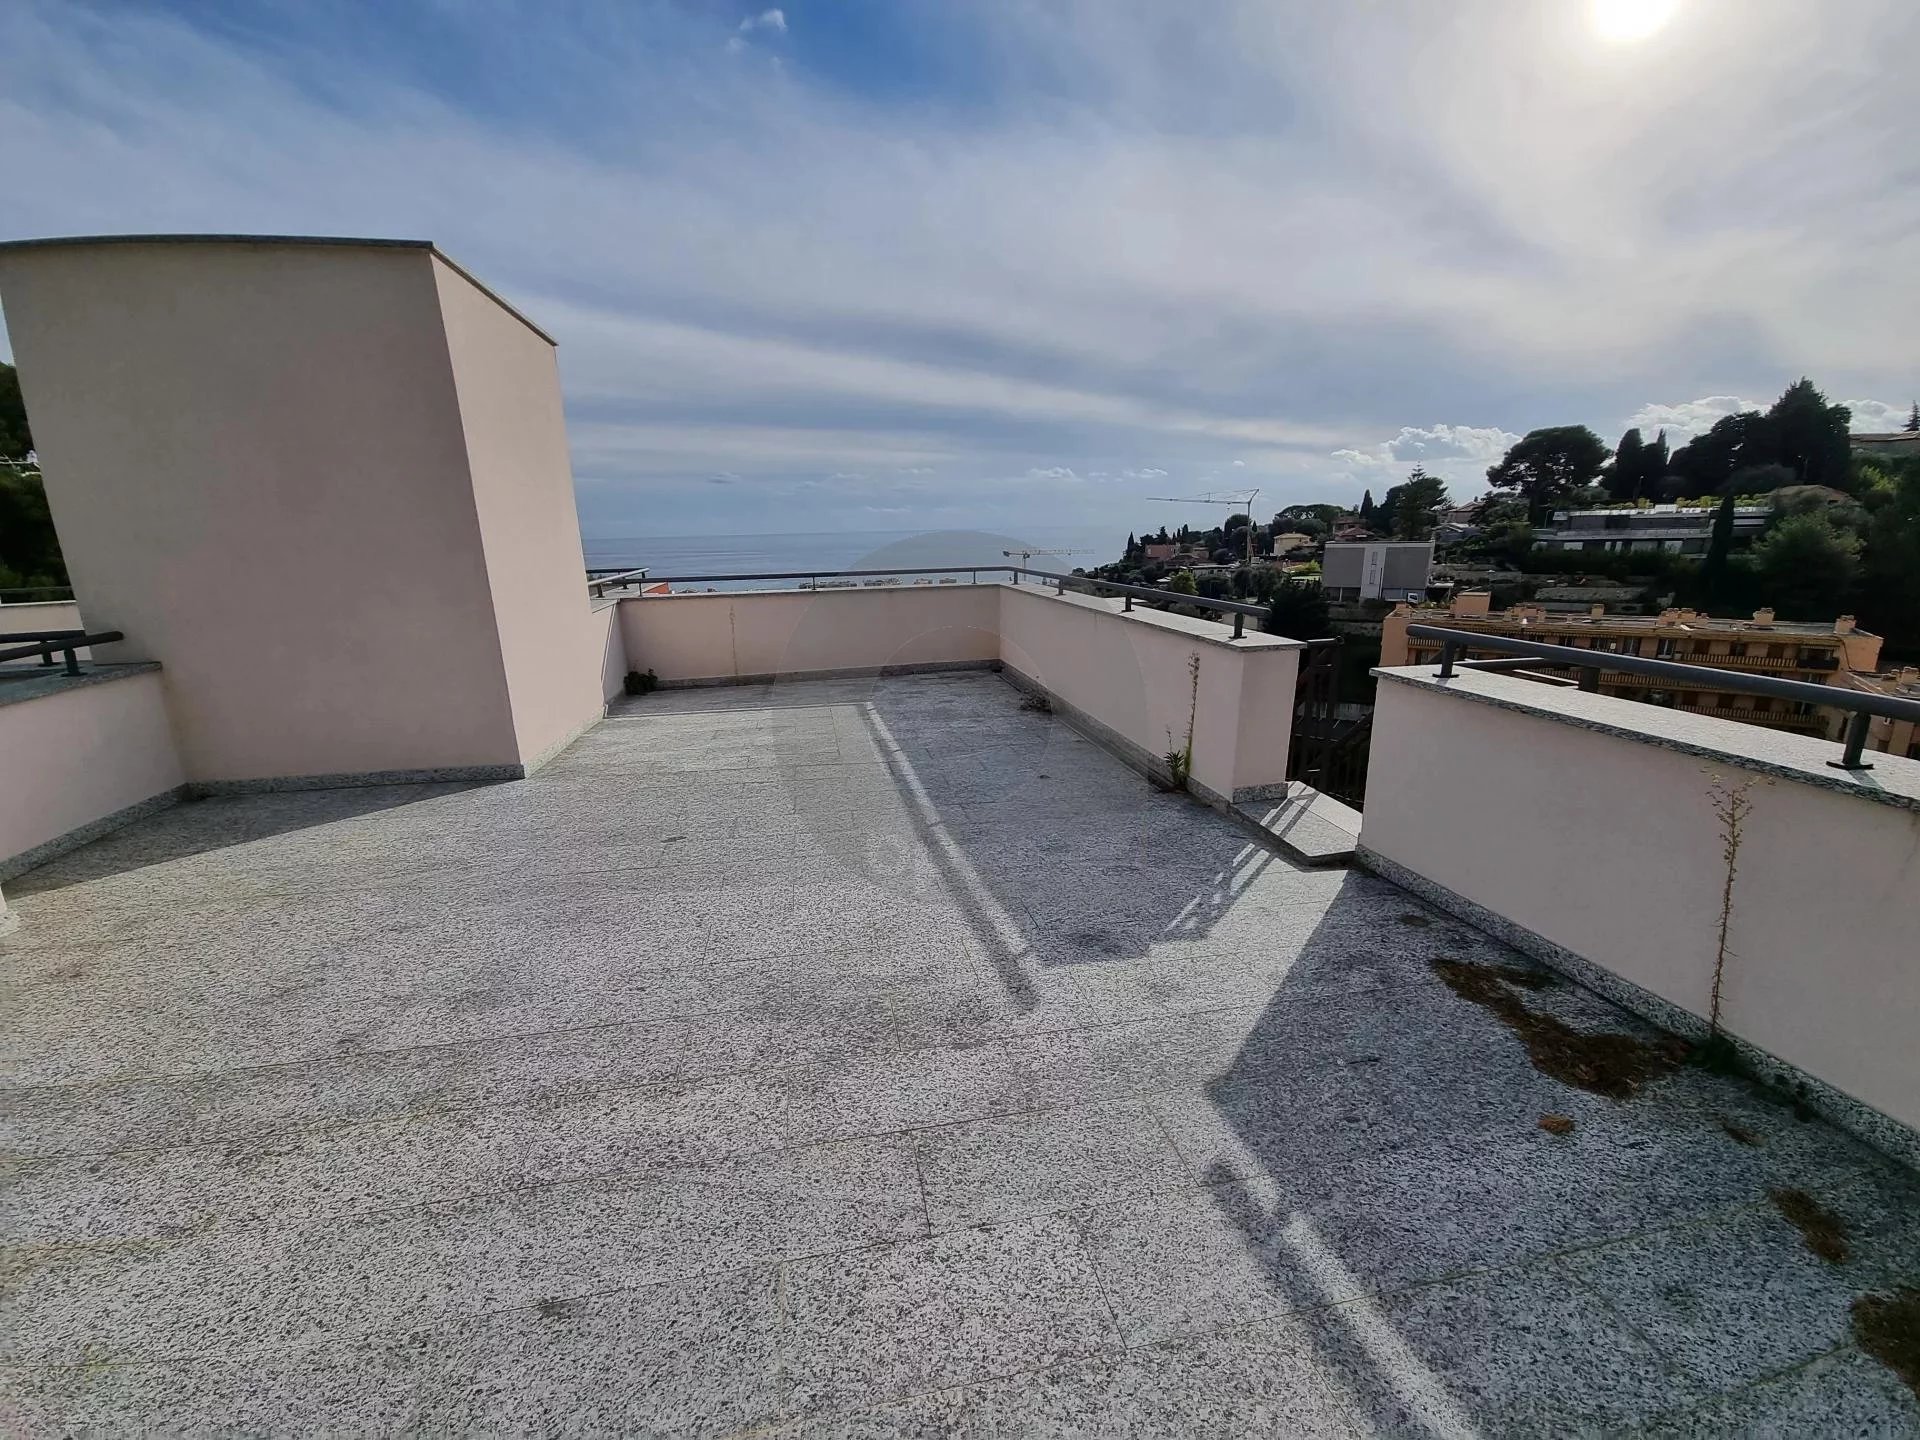 ROQUEBRUNE CAP MARTIN, superb 2p roof top terrace and solarium, sea view!